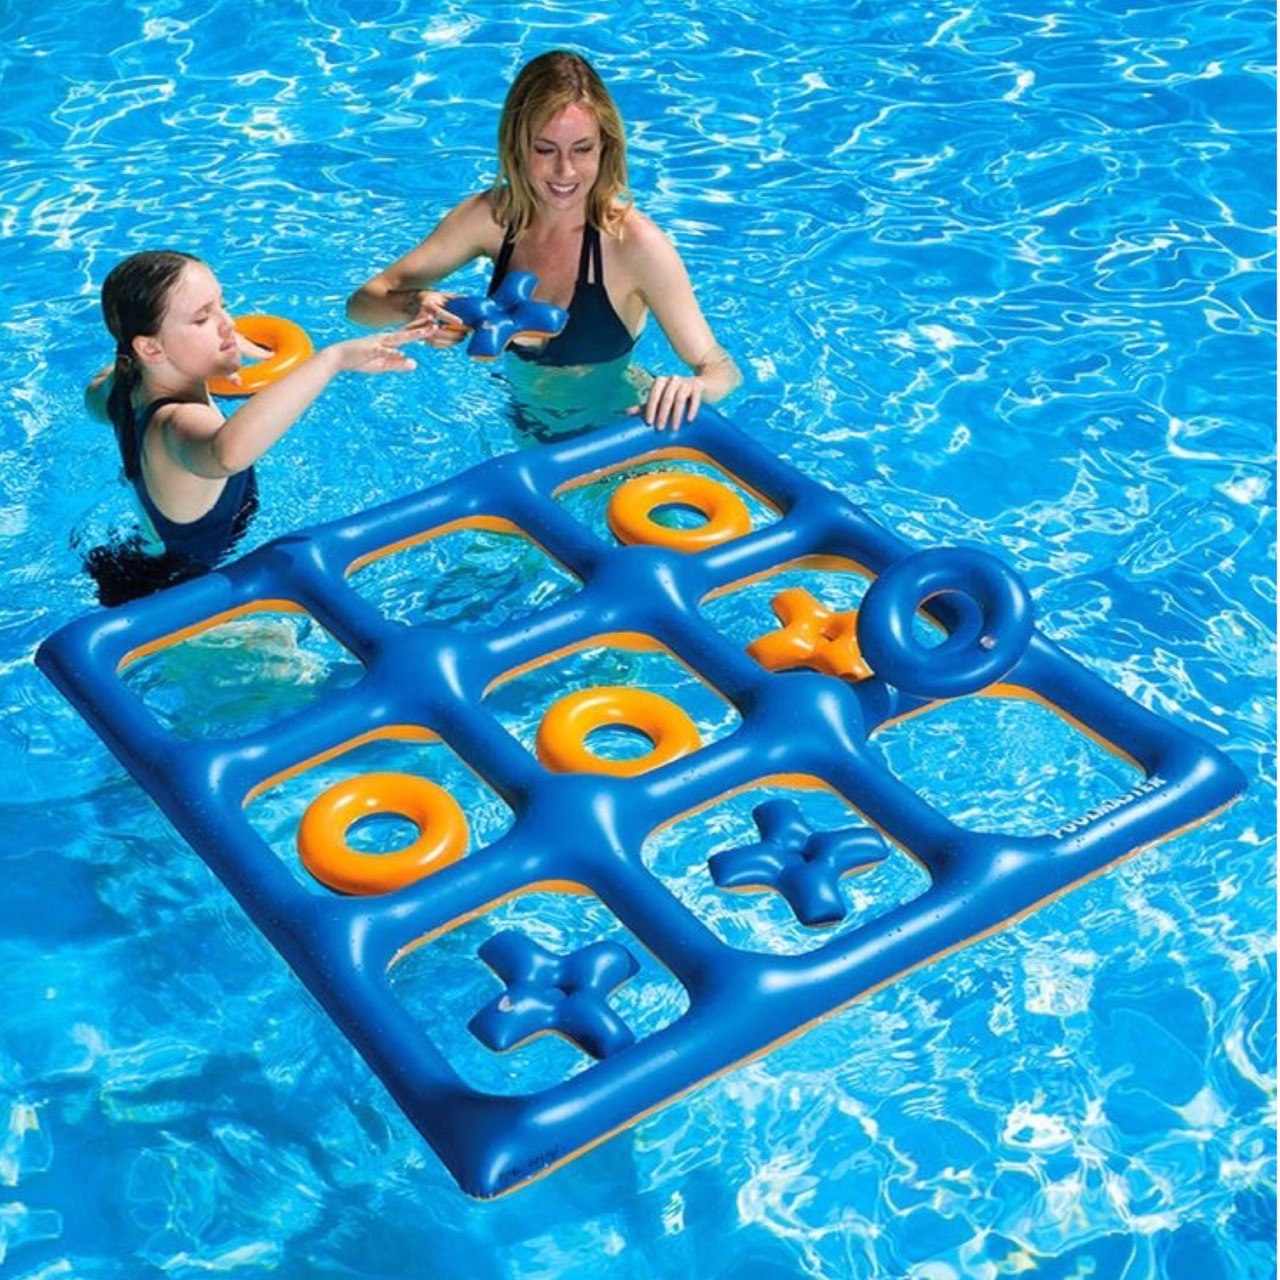 Бассейн для мальчиков купить. Инвентарь для купания. Игрушки для бассейна. Игры в бассейне для детей. Игрушки плавающие для бассейна.